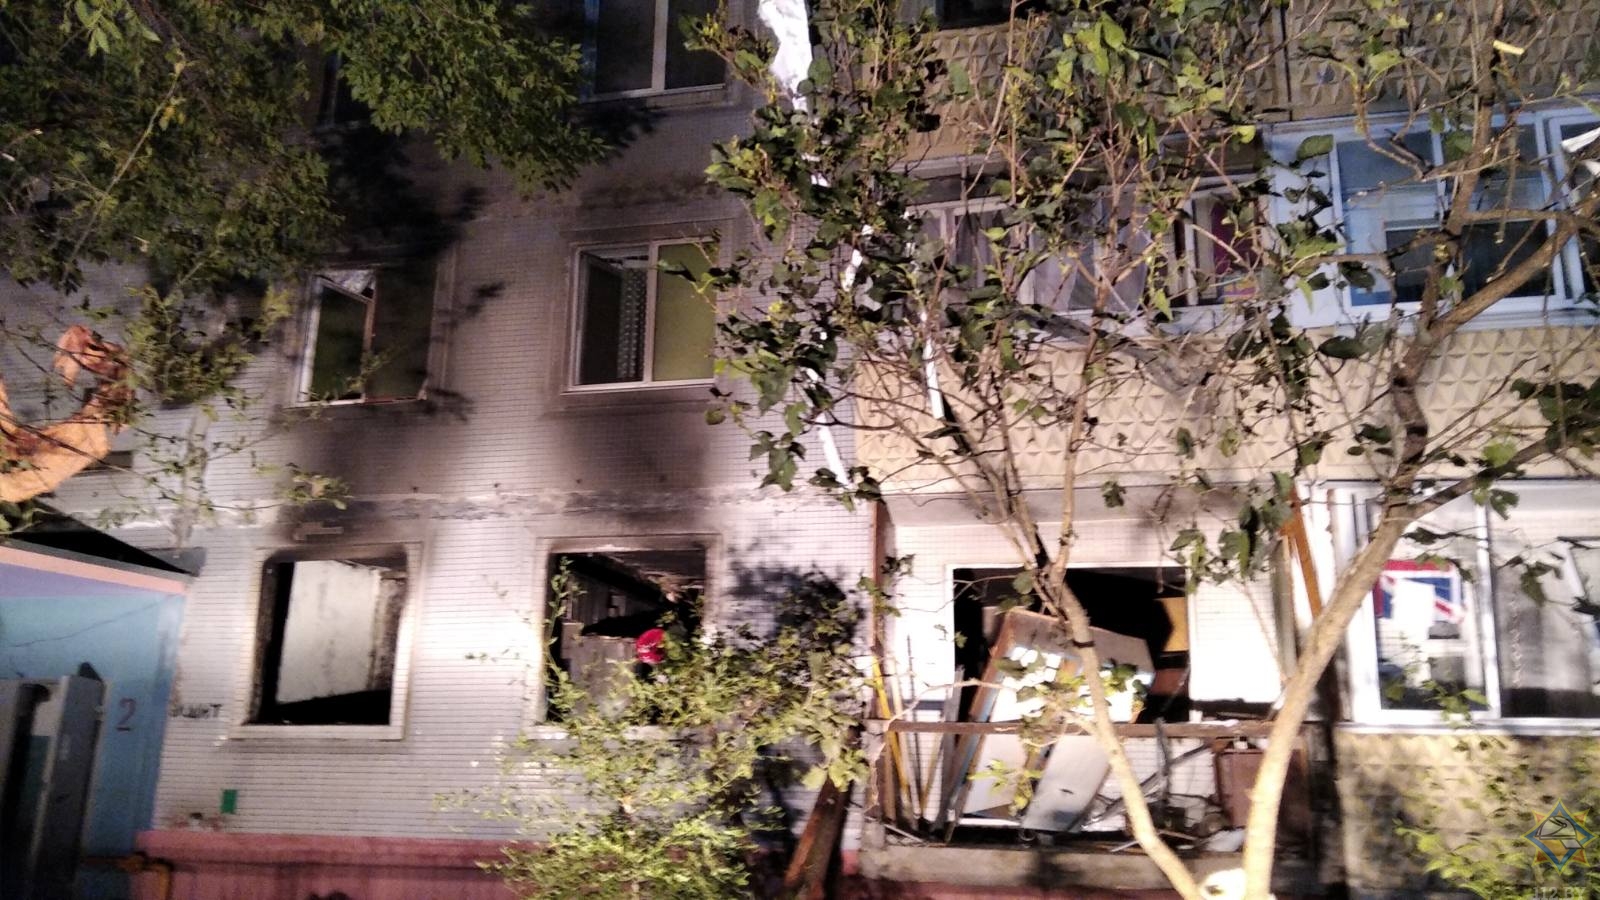 Бытовой газ взорвался в девятиэтажке в Бобруйске